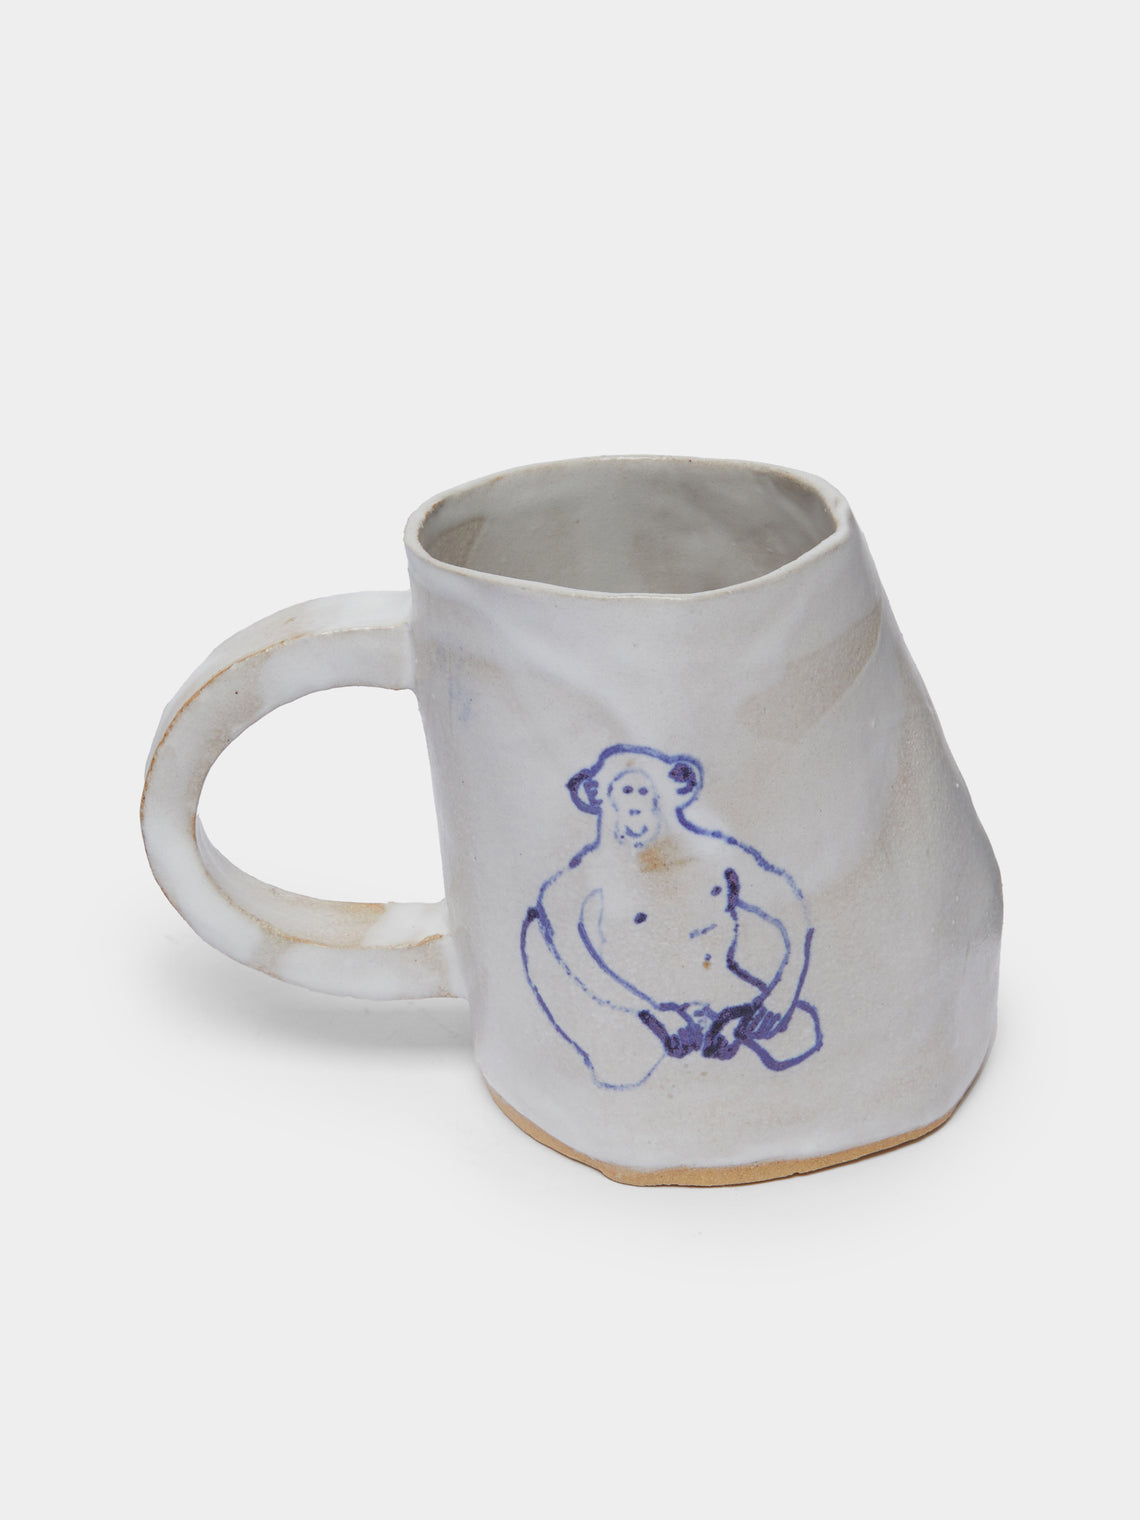 Liz Rowland - Monkey Hand-Painted Ceramic Mug -  - ABASK - 